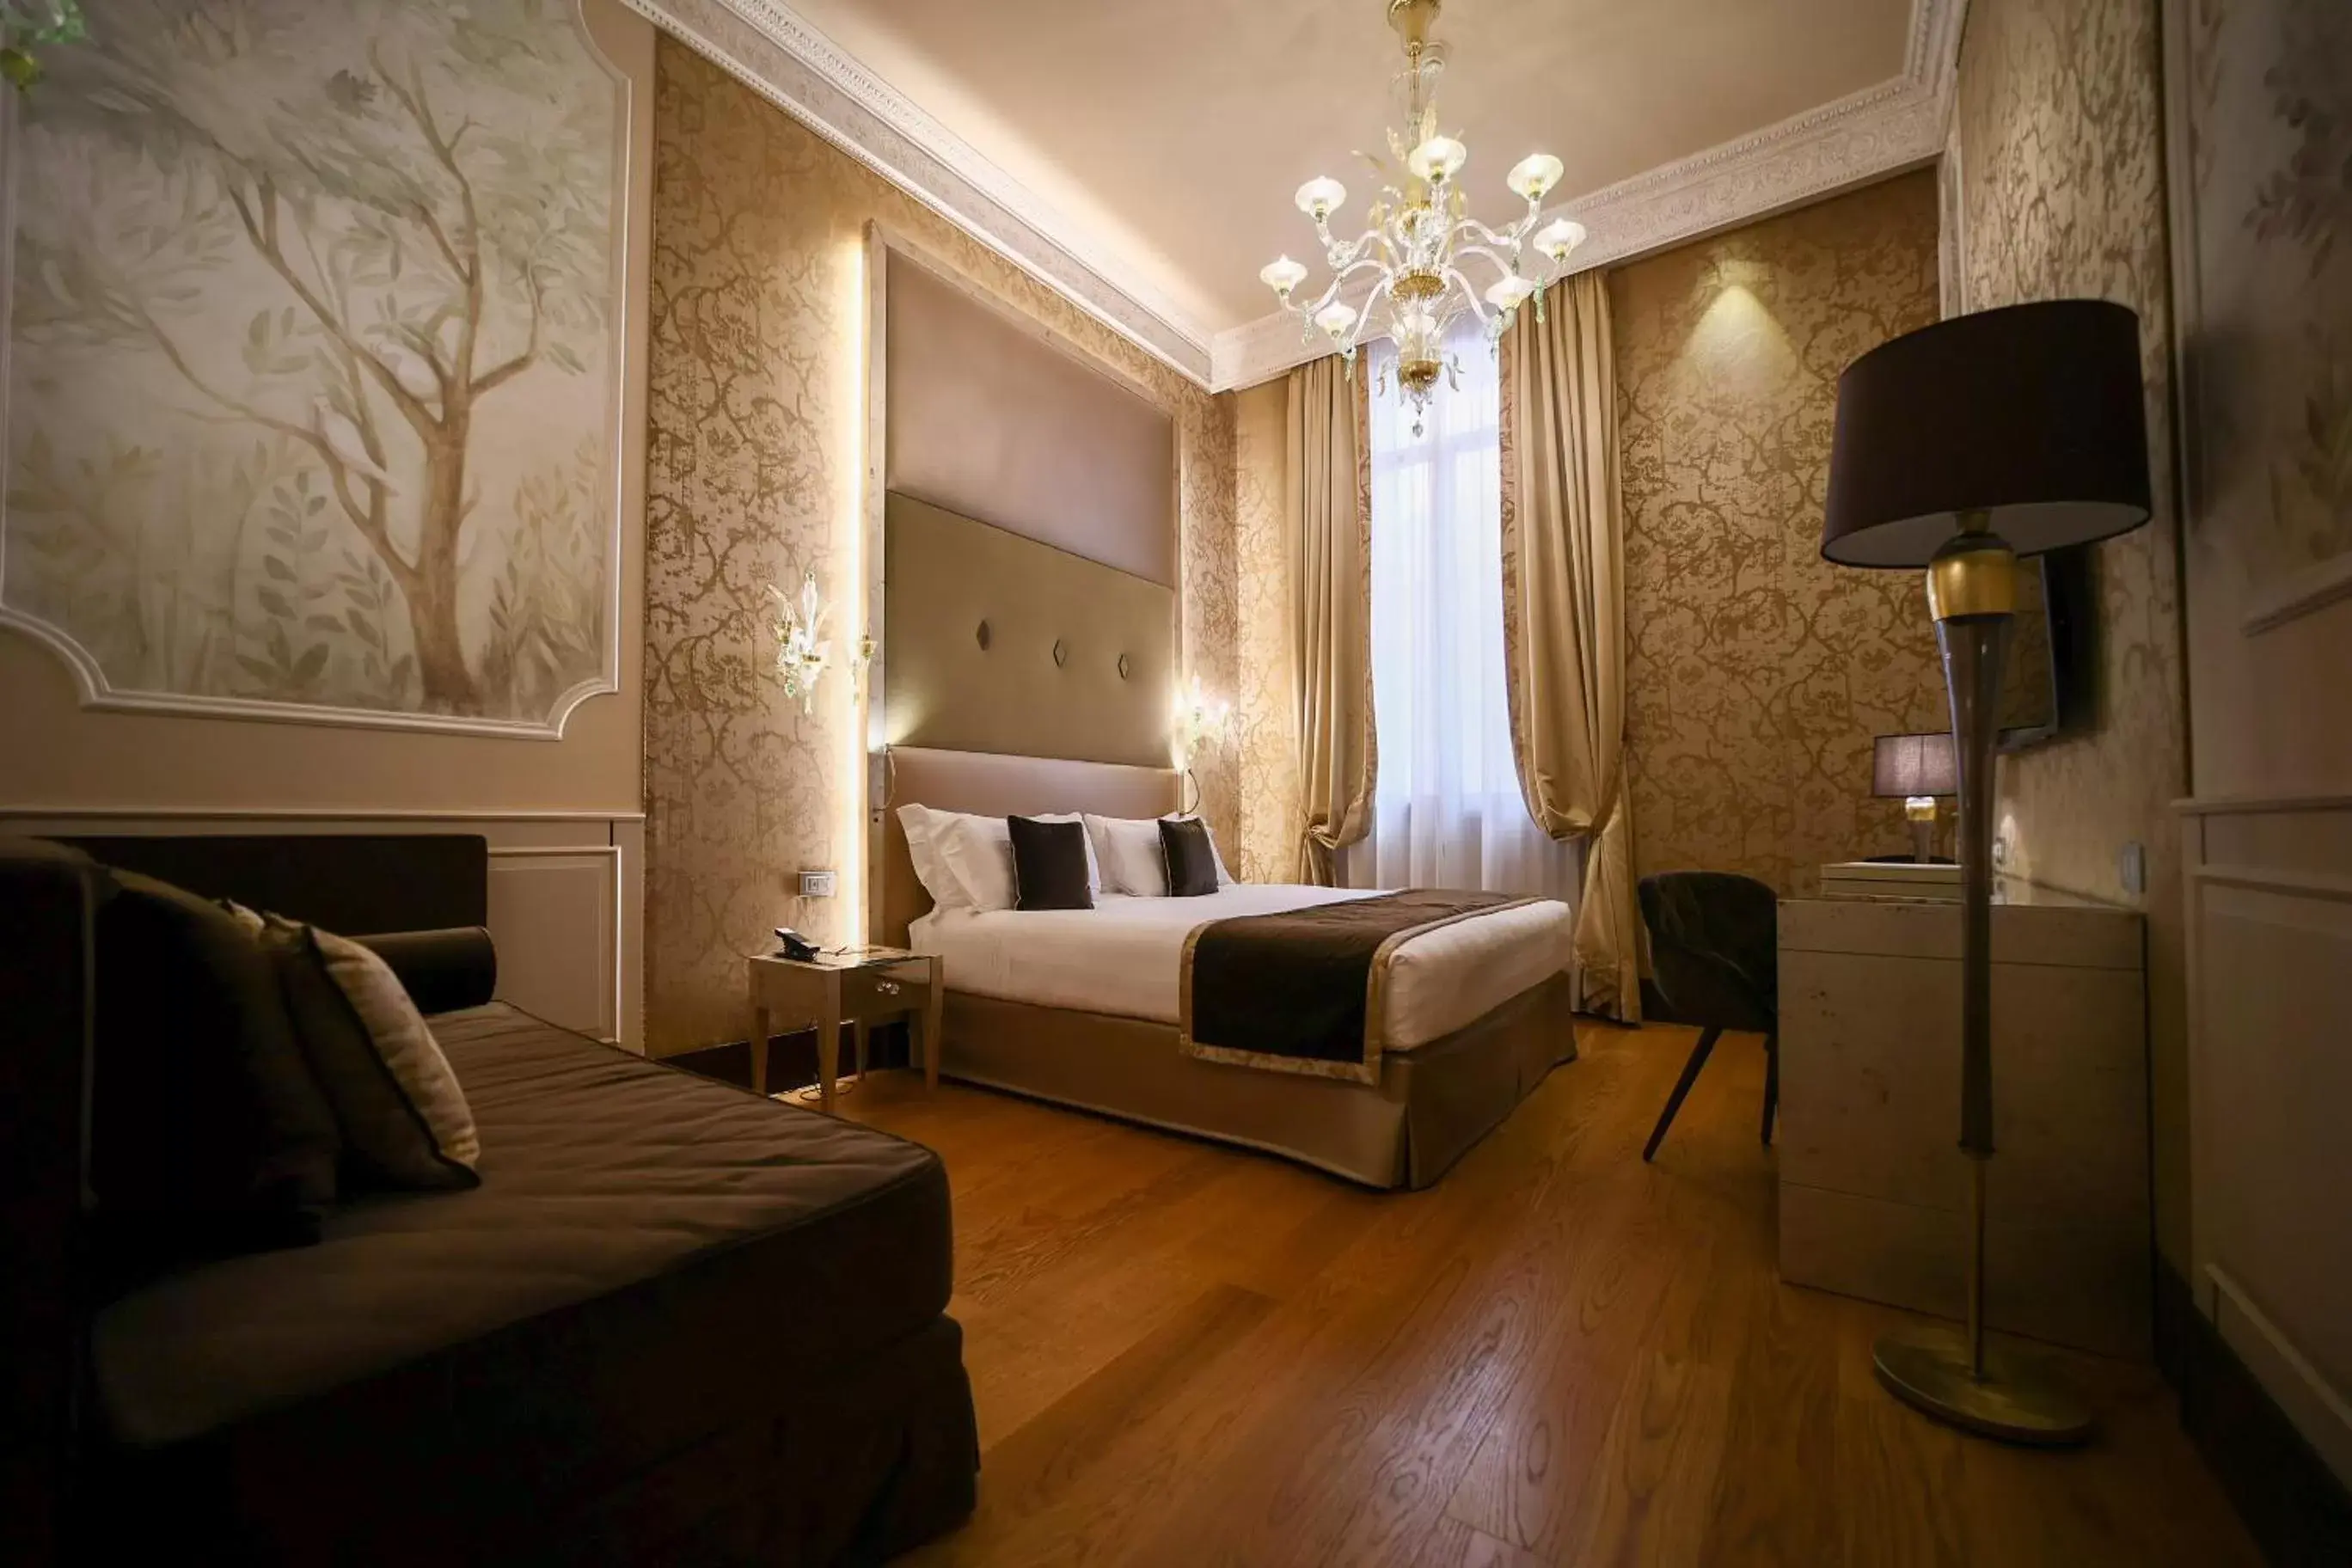 Bedroom, Seating Area in Santa Croce Boutique Hotel